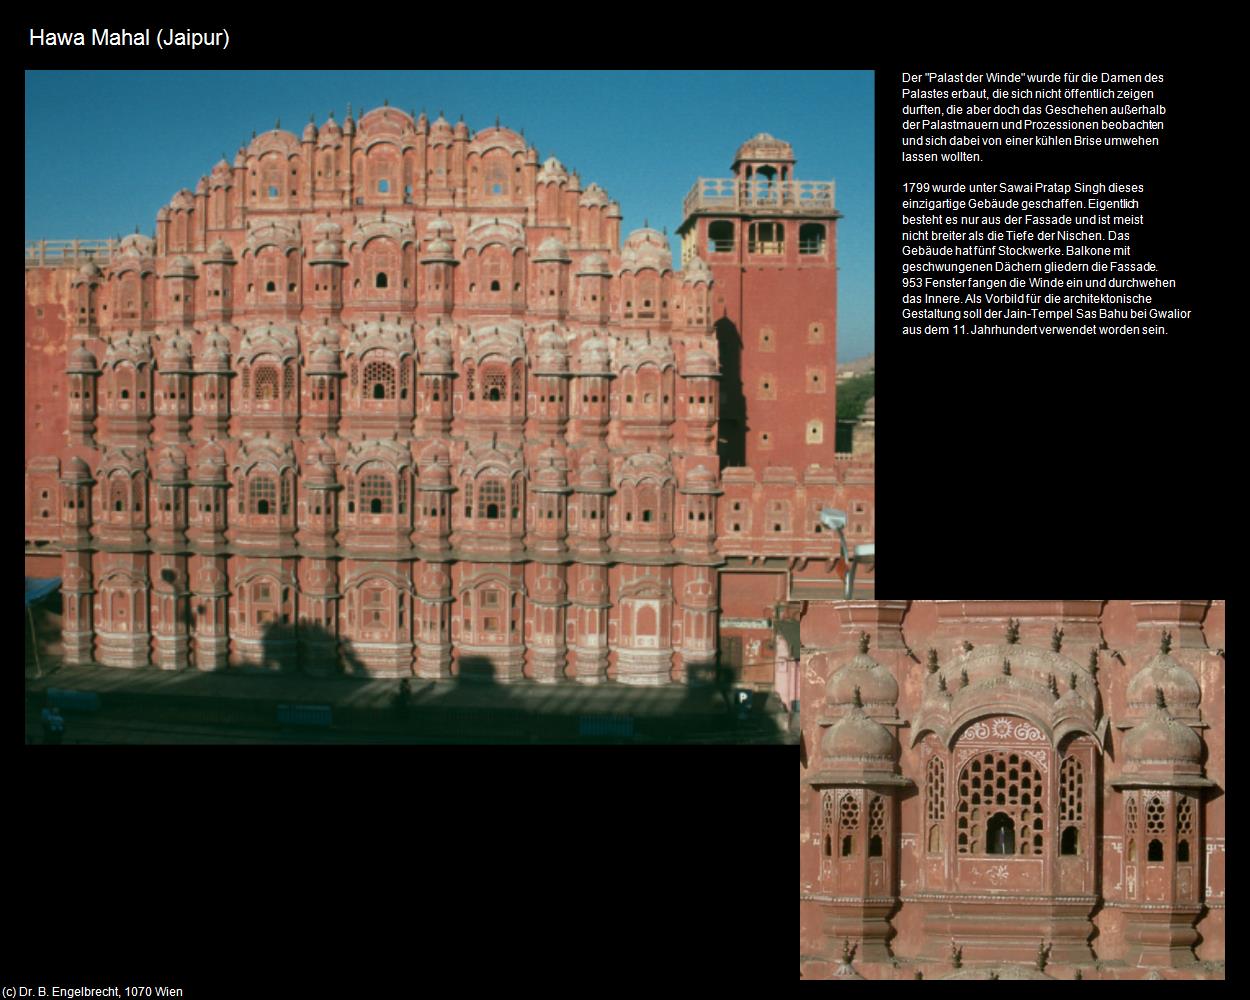 Hawa Mahal (Jaipur) in Rajasthan - das Land der Könige